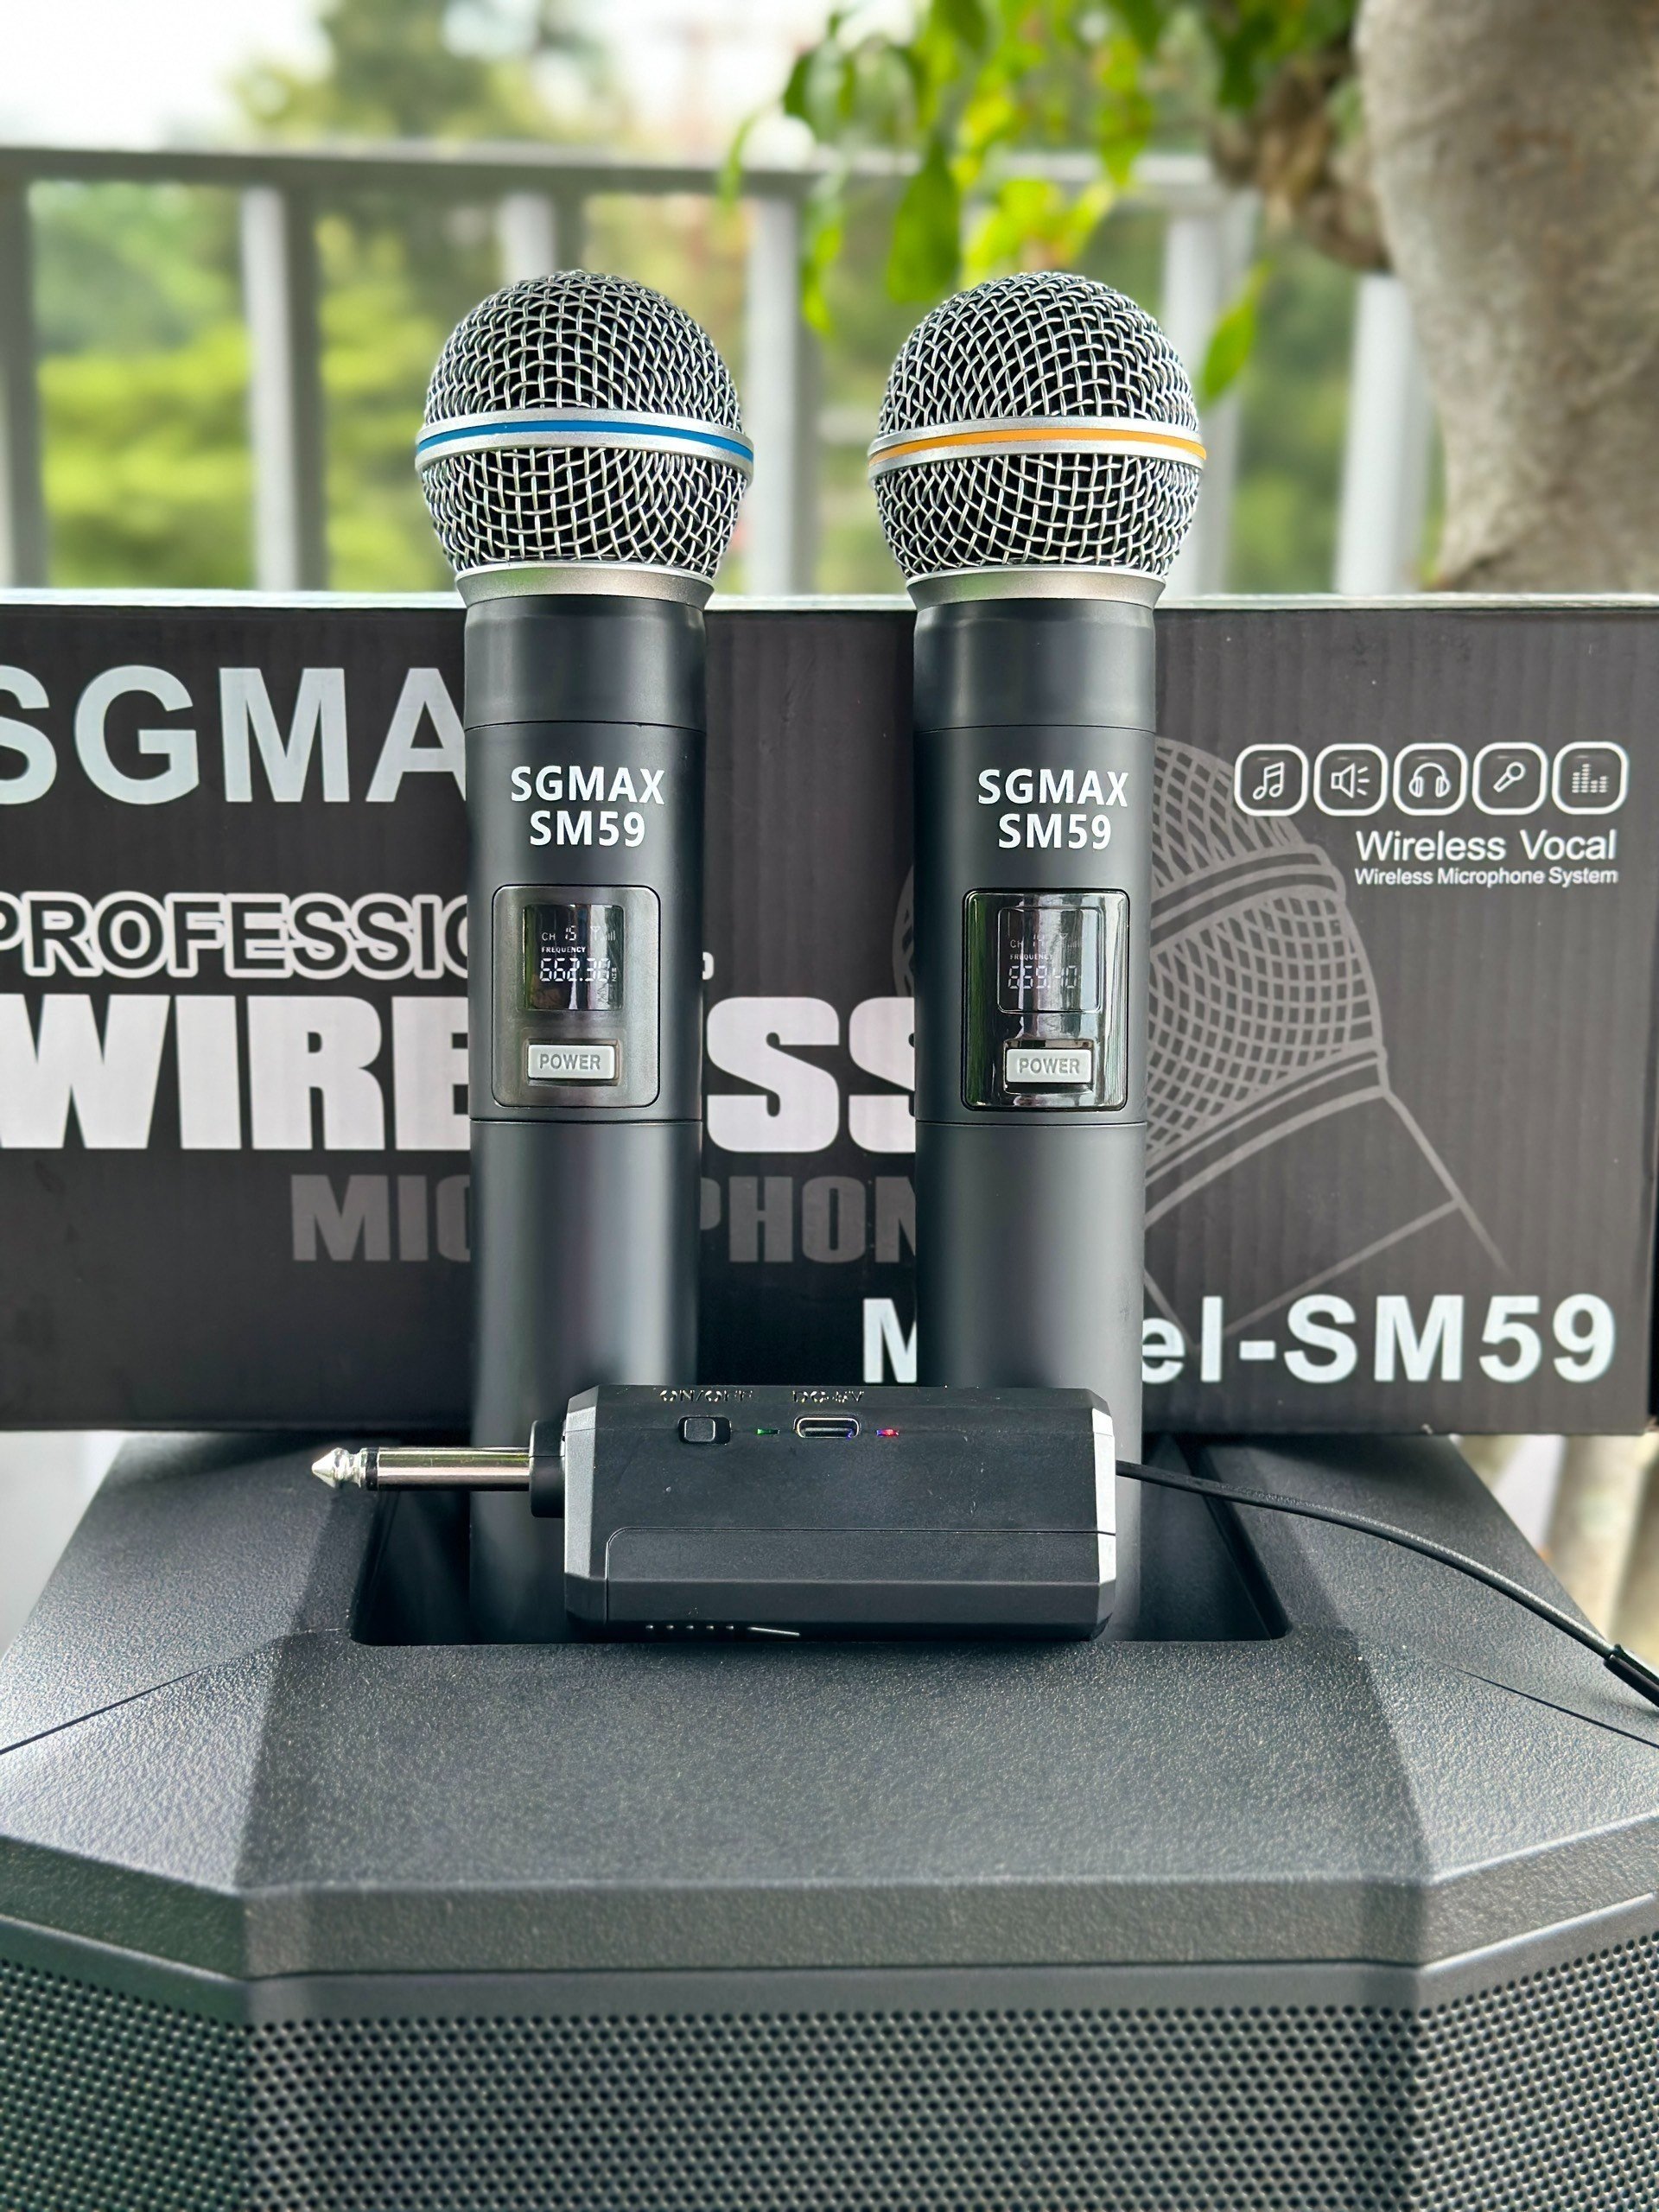 SGMax SM59- Micro Karaoke Không Dây Chính Hãng Chống Hù Rè Tốt Hỗ Trợ Nâng Giọng Hát Khi Hát Sạc Pin Trực Tiếp Trên Micro Bắt Sóng Xa Đến 15m hàng chính hãng